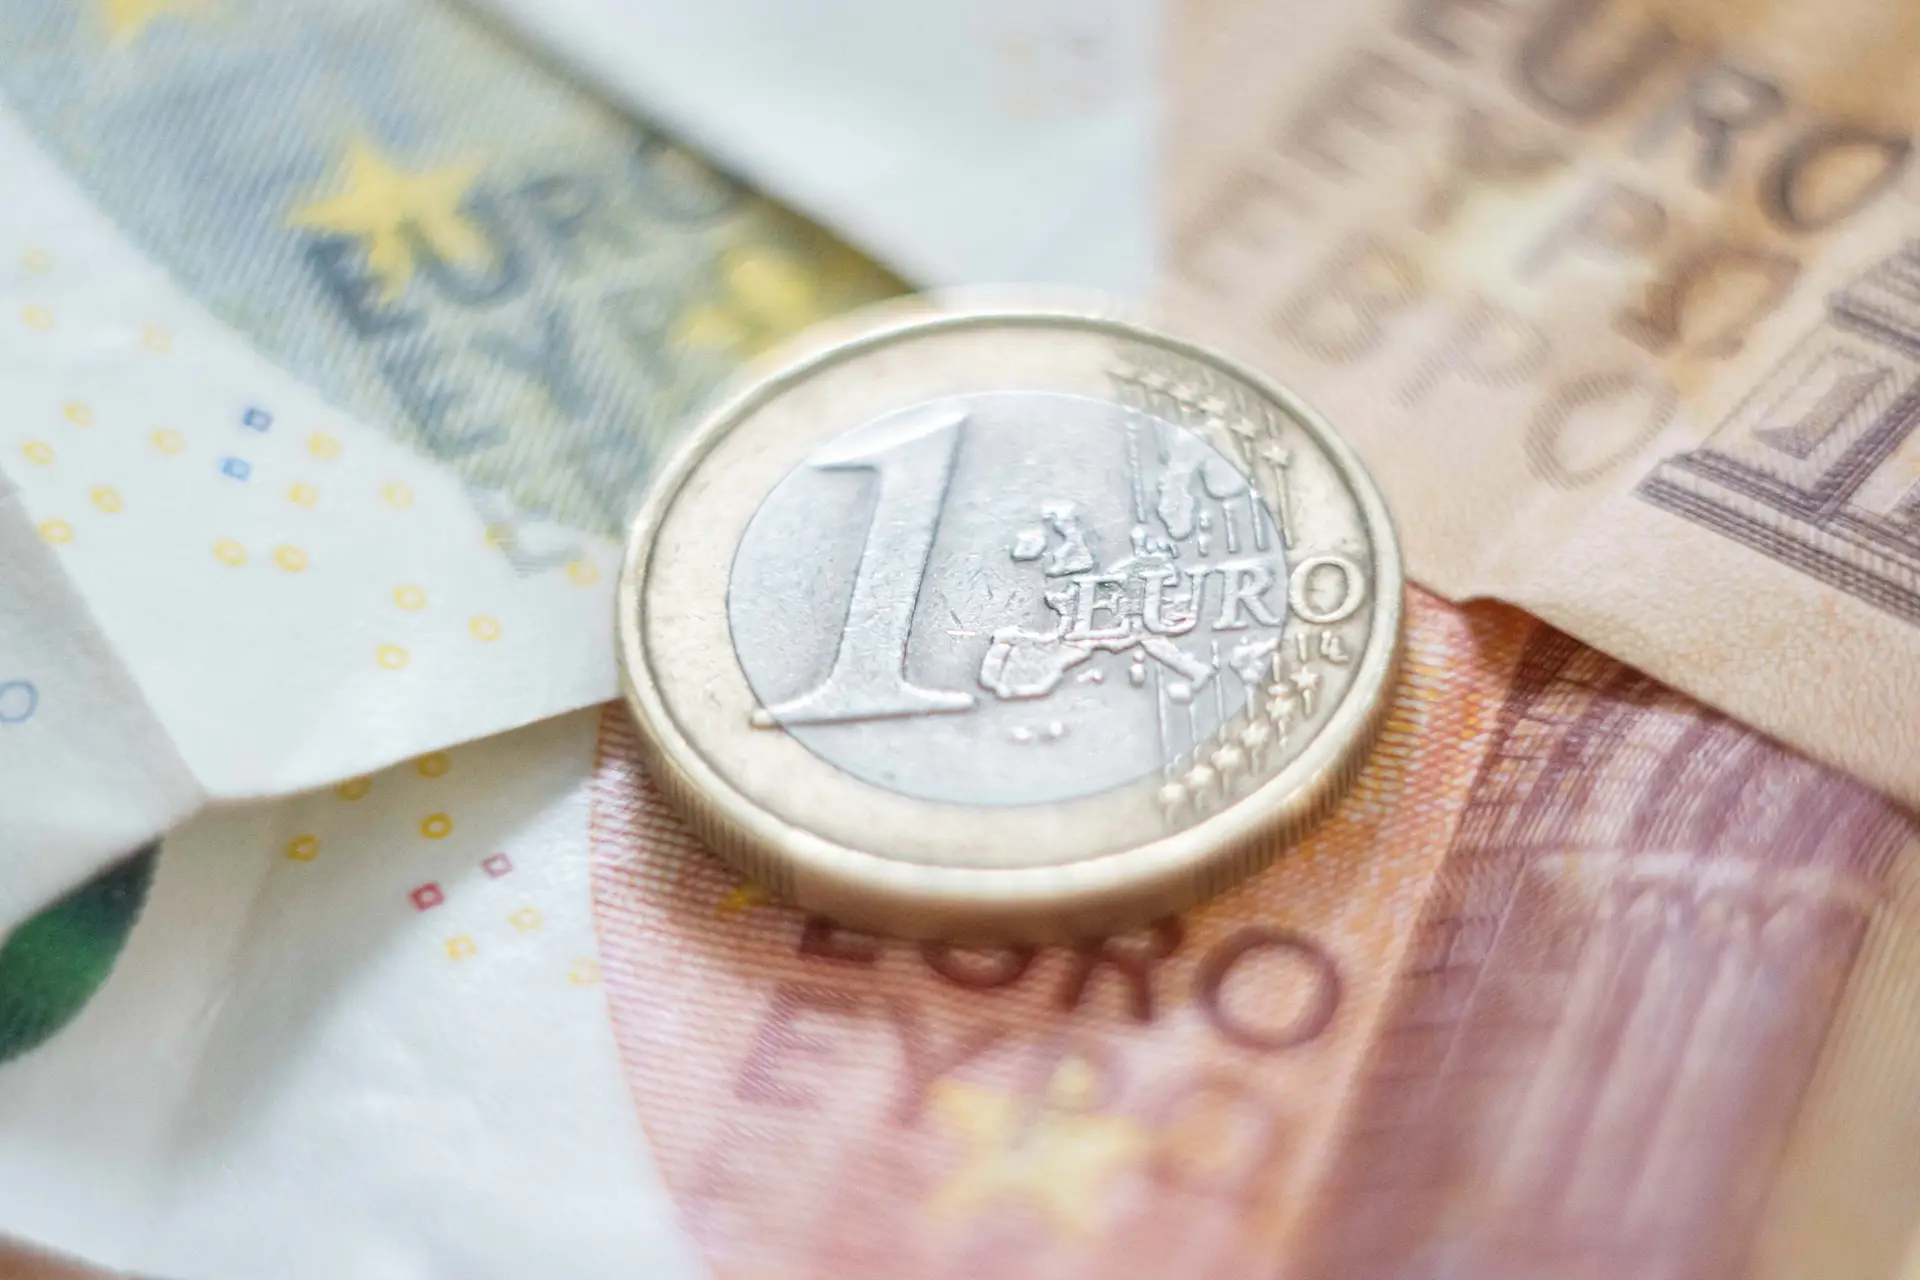 Euro comemora 20 anos de circulação no dia 1 de janeiro